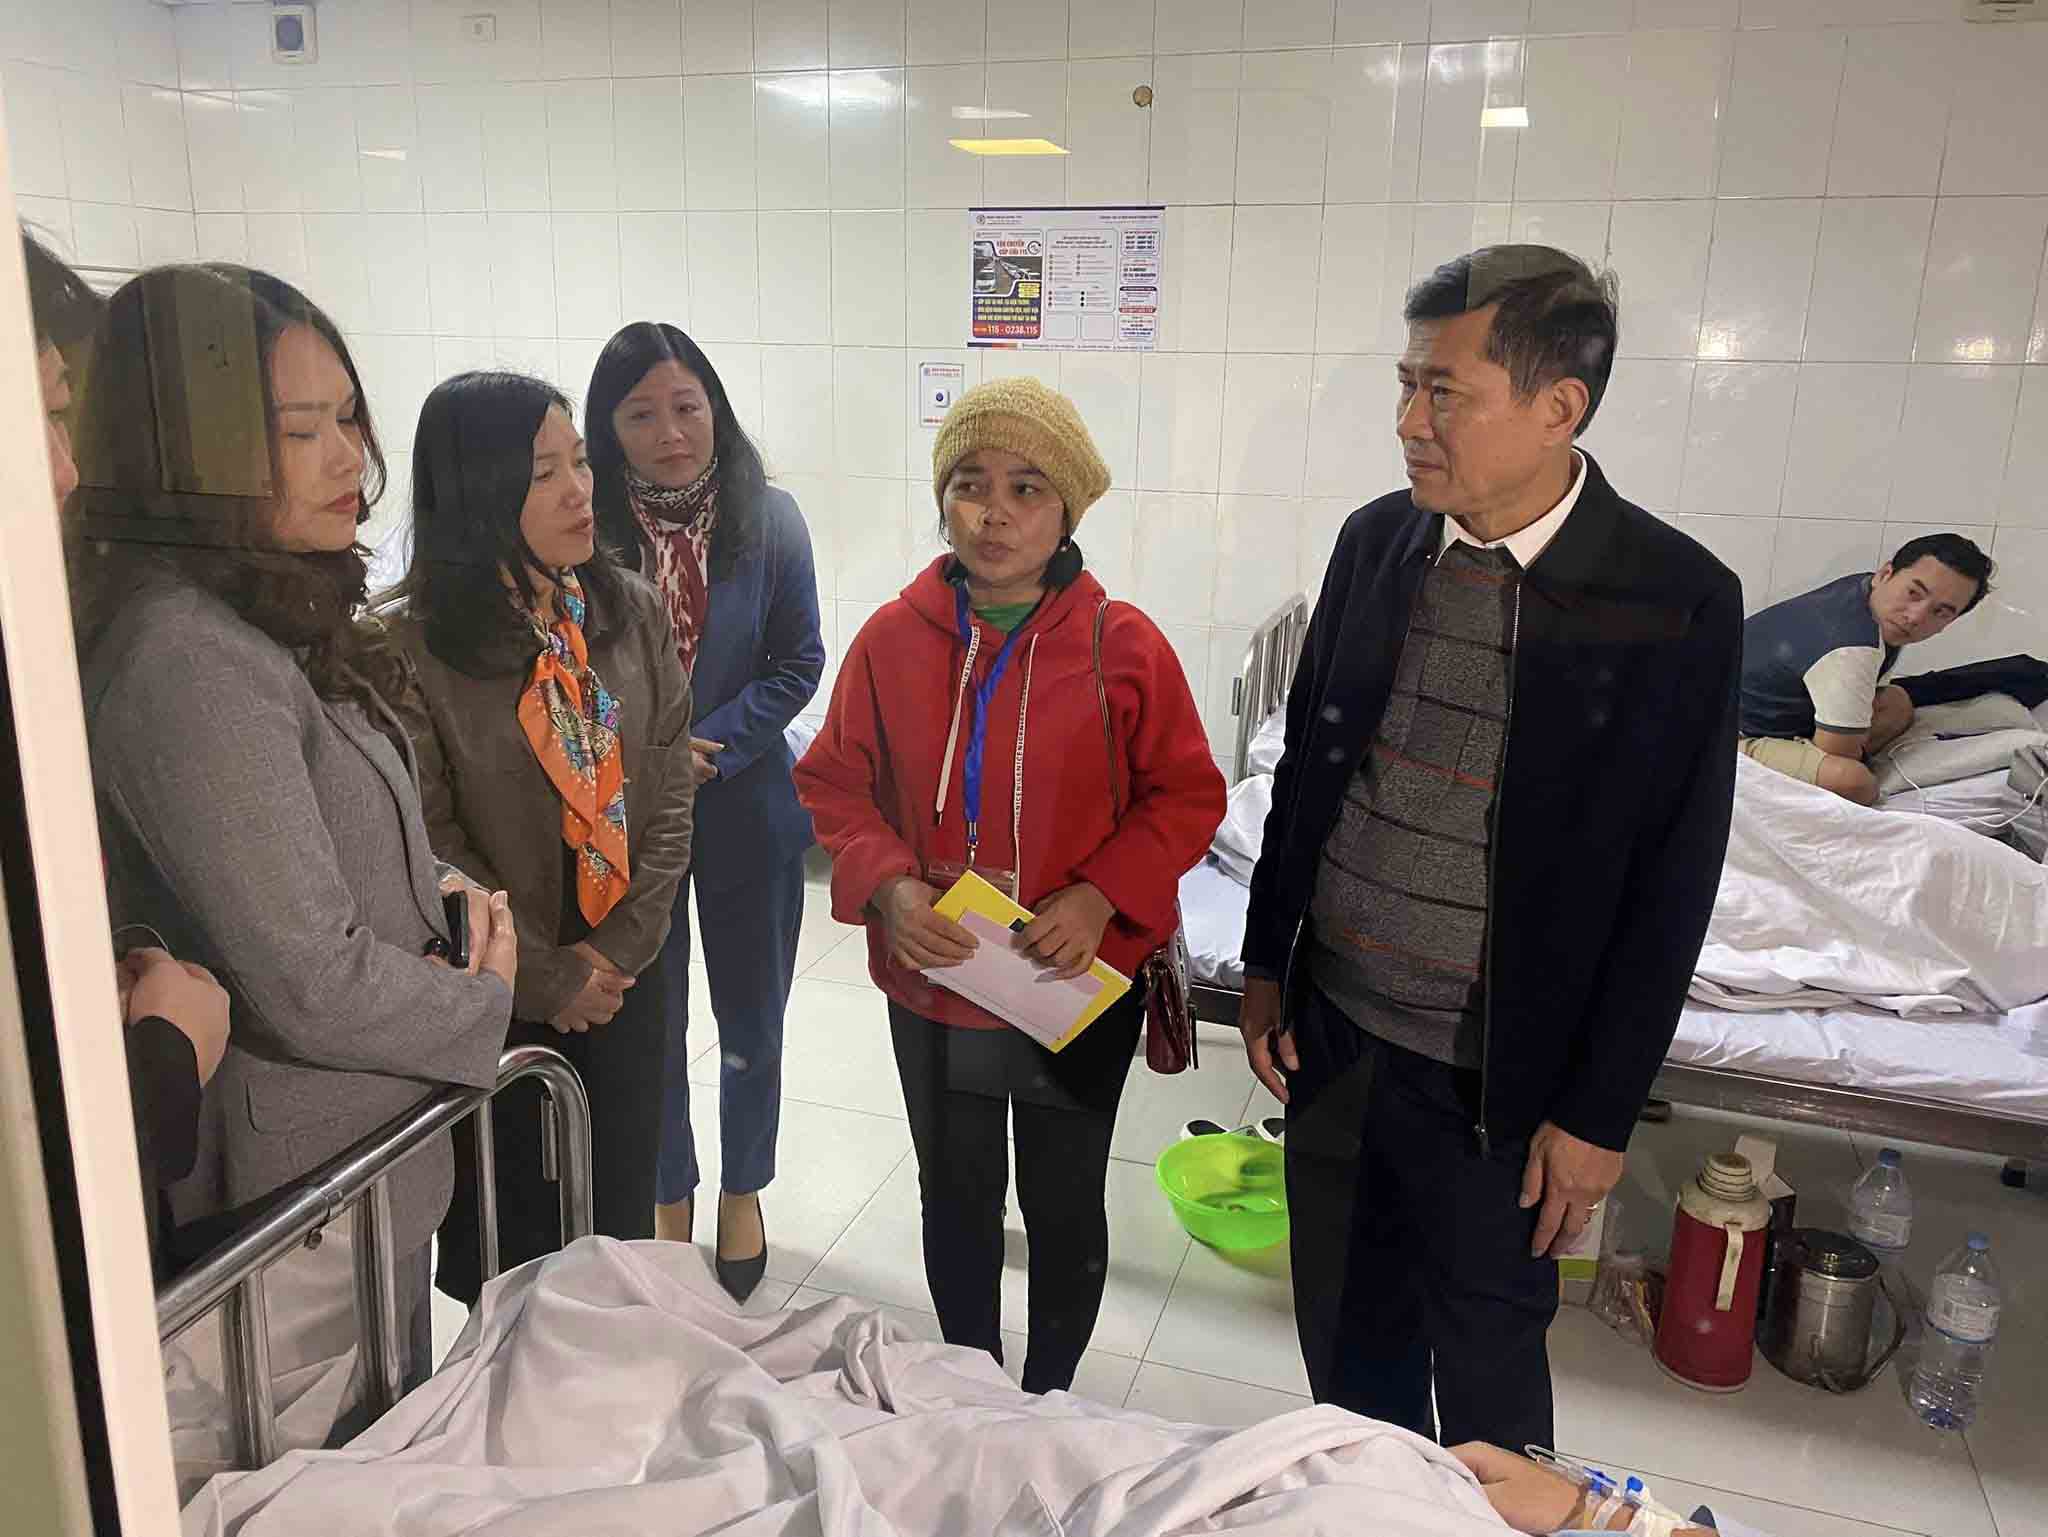 Giám đốc Sở Giáo dục và Đào tạo tỉnh Nghệ An Thái Văn Thành thăm các học sinh bị thương. Ảnh: Hải Đăng